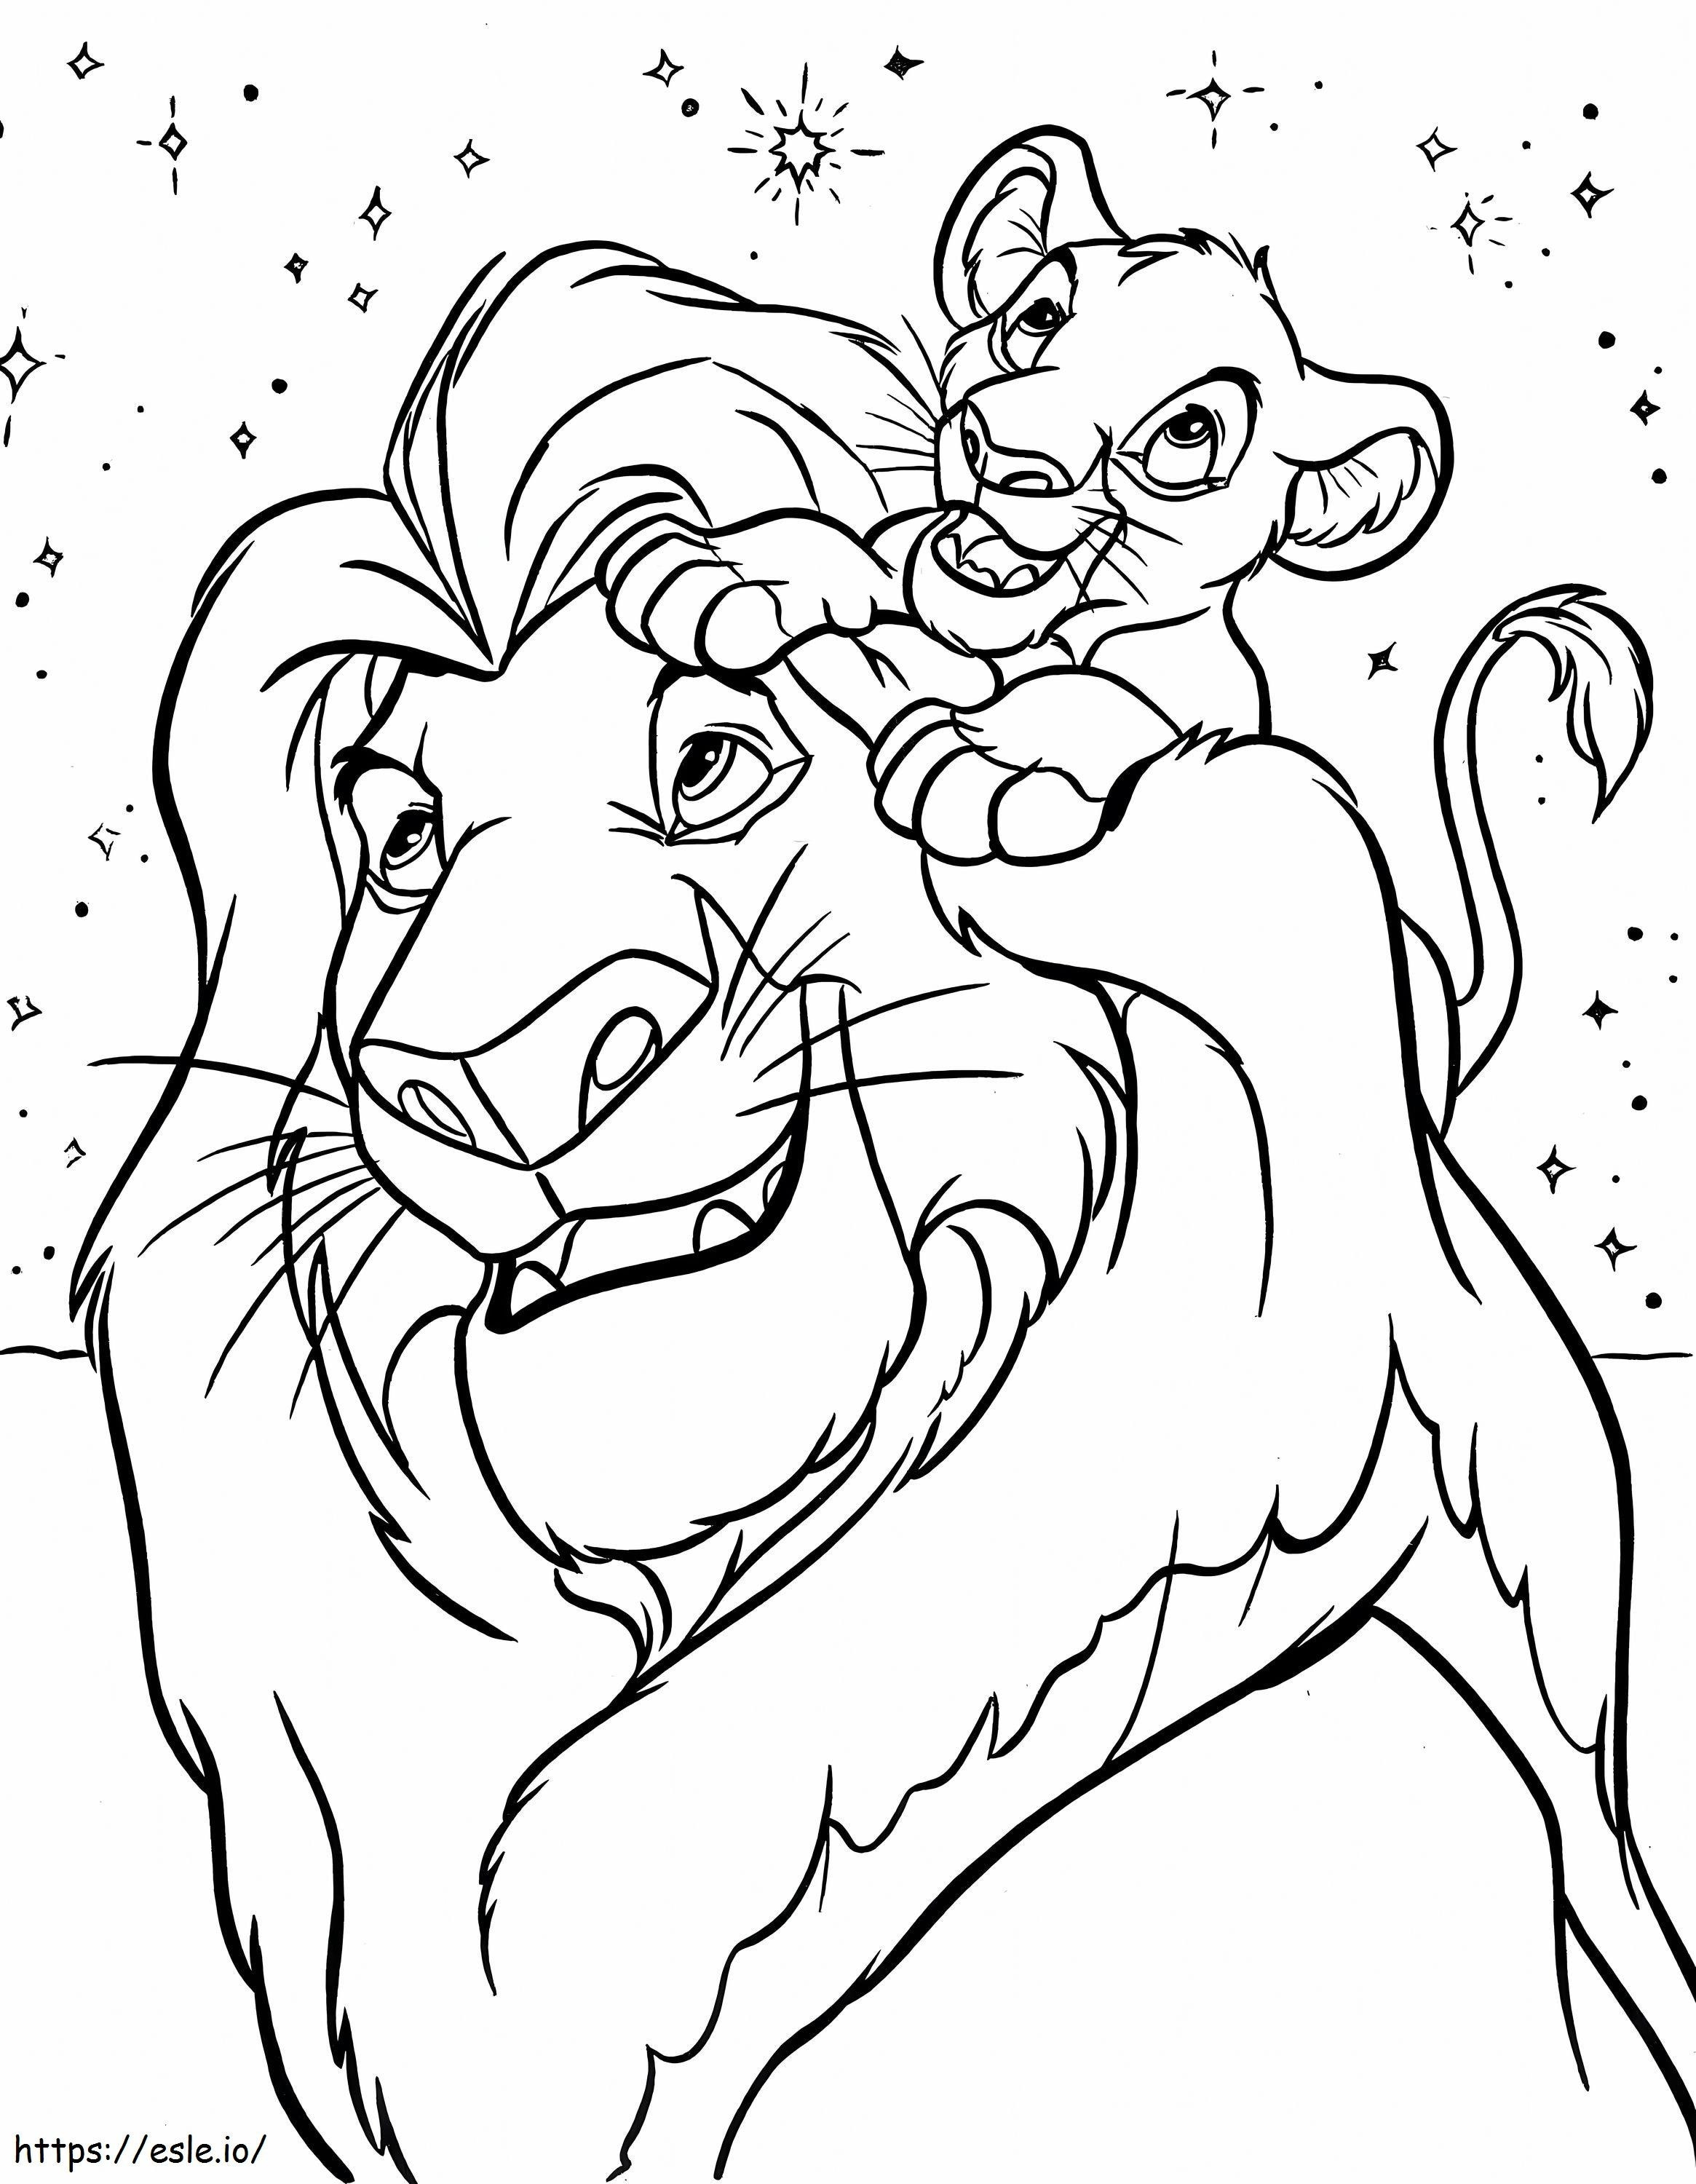 Coloriage Disney Le Roi Lion à imprimer dessin